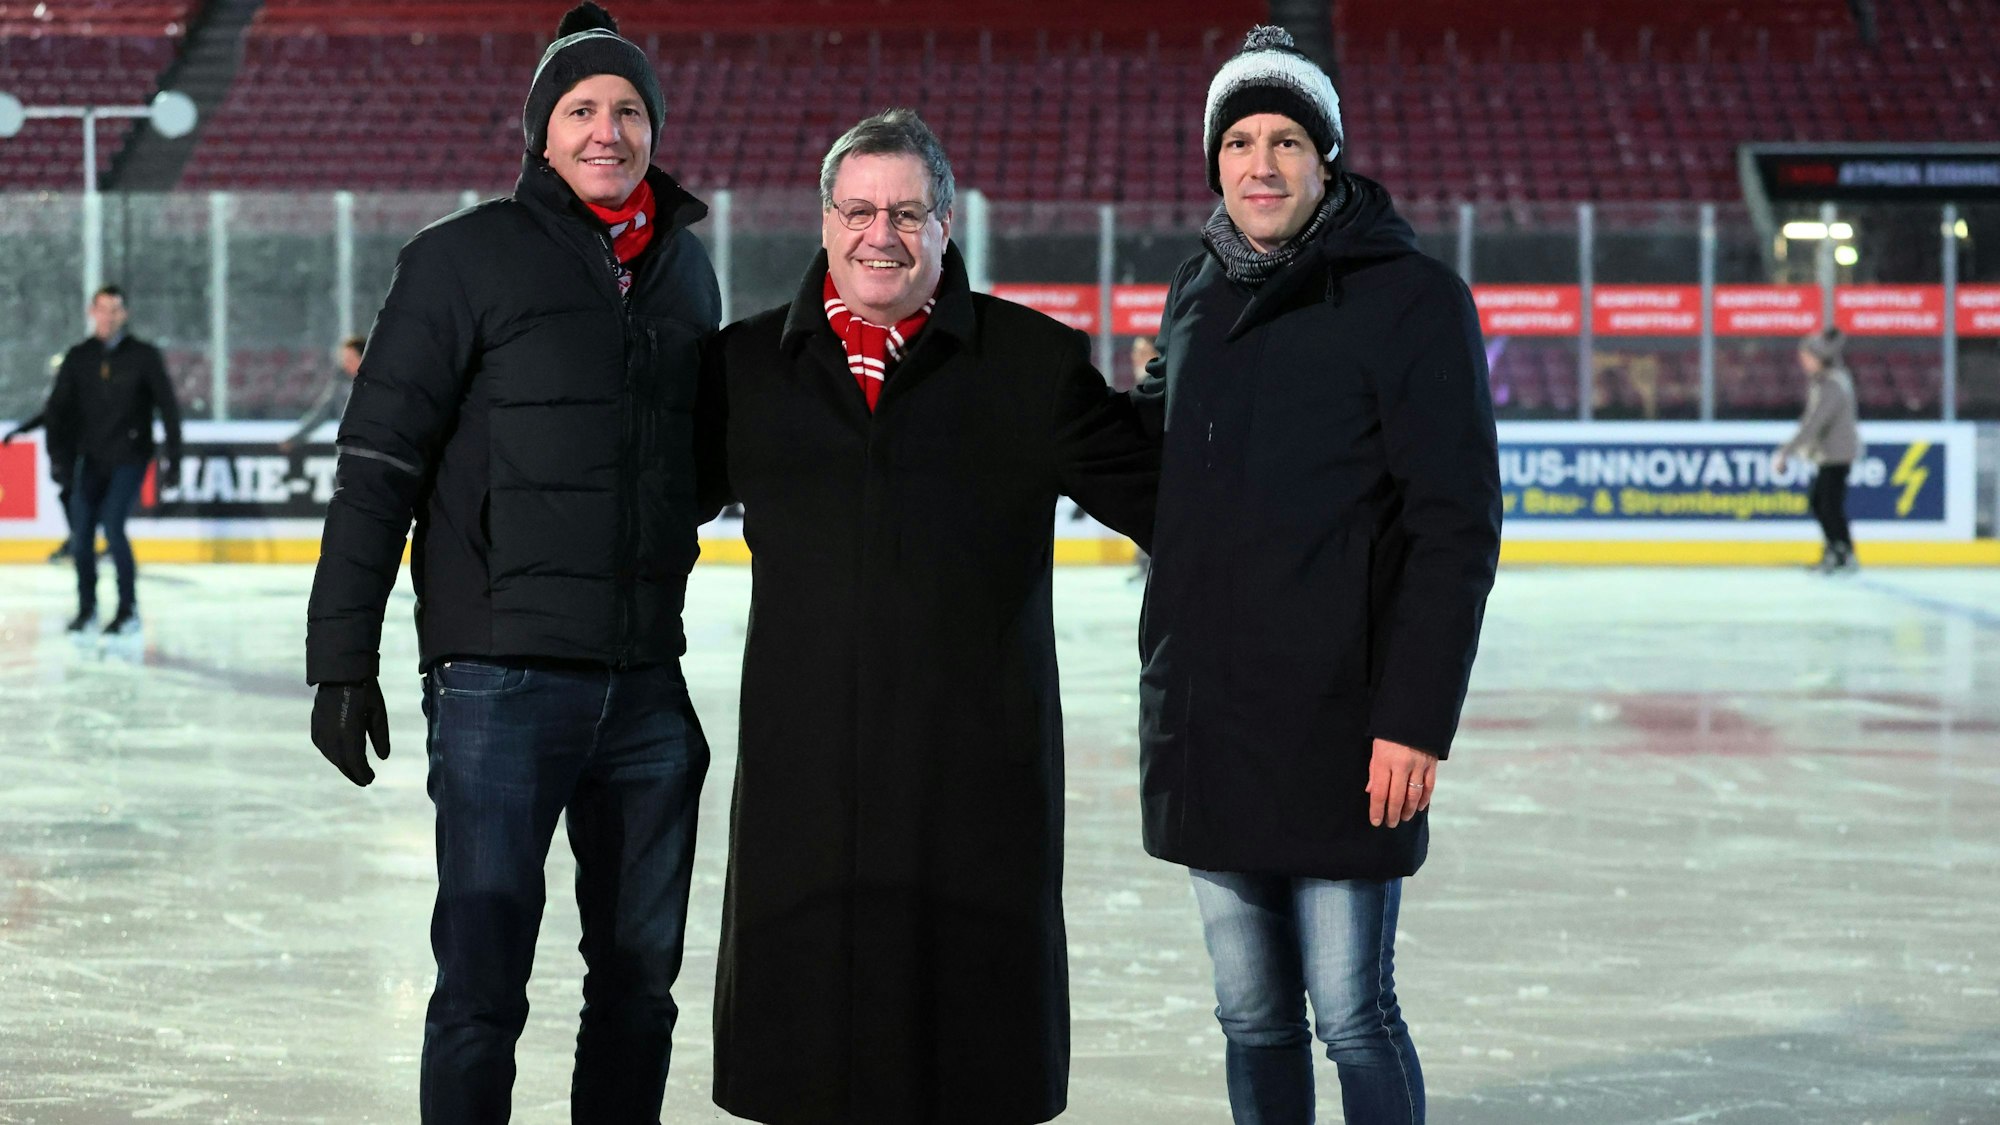 Weihnachtsfeier des 1. FC Köln: Philipp Türoff, Kaufmännischer Geschäftsführer, Präsident Werner Wolf und Vize-Präsident Carsten Wettich (v.l.) stehen auf dem Eis.